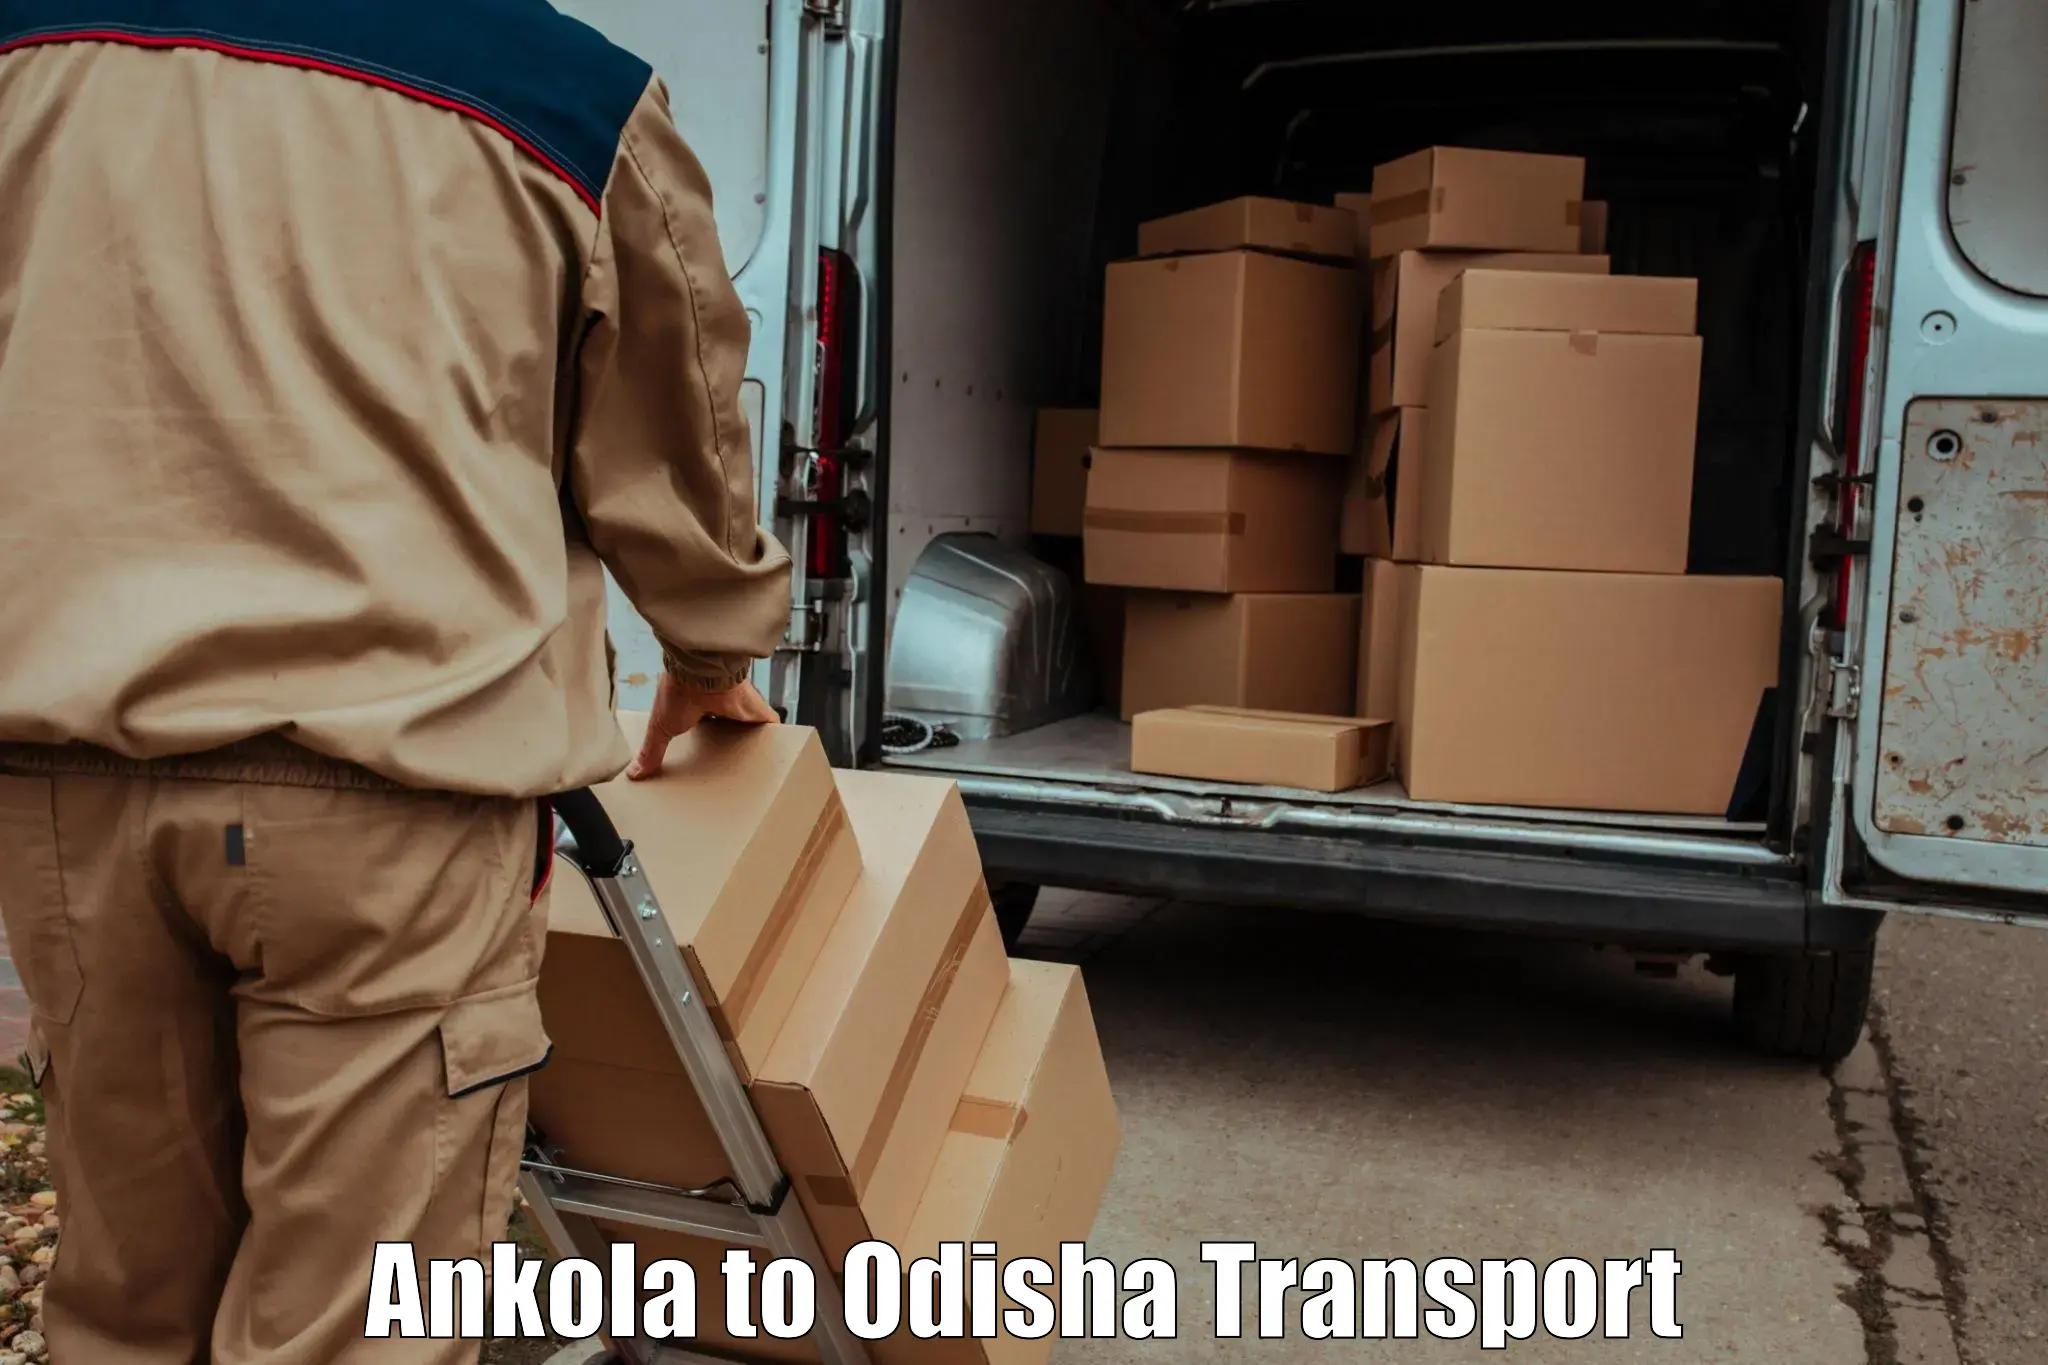 Air freight transport services Ankola to Rairakhol